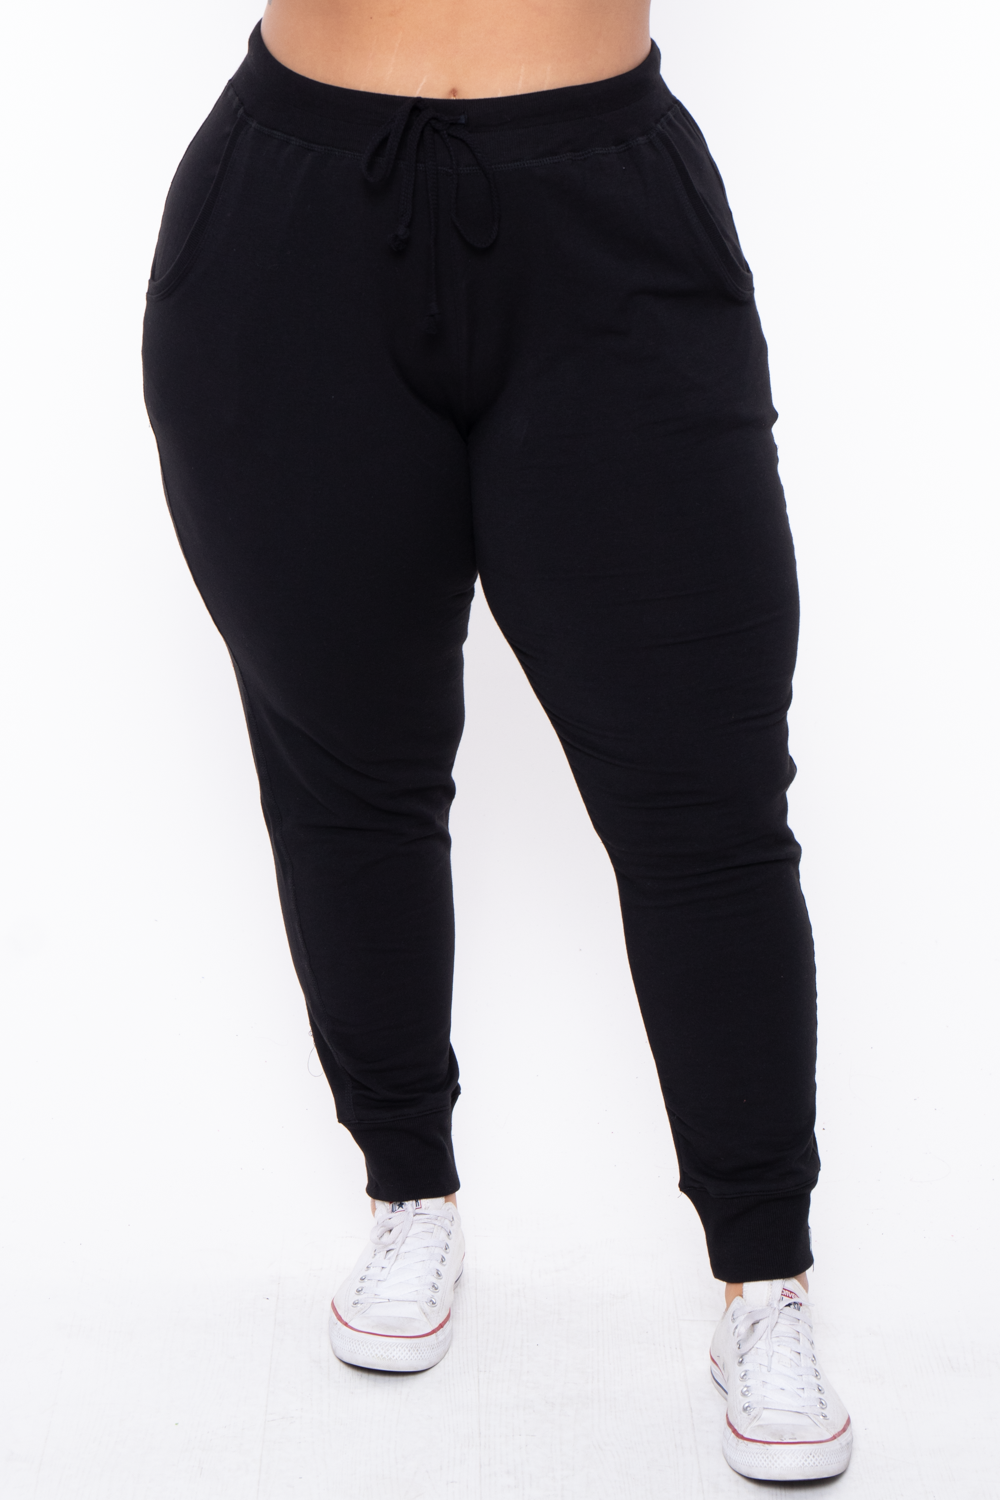 Max Studio Women's Plus Size Jogger Pant, Black, 3X at